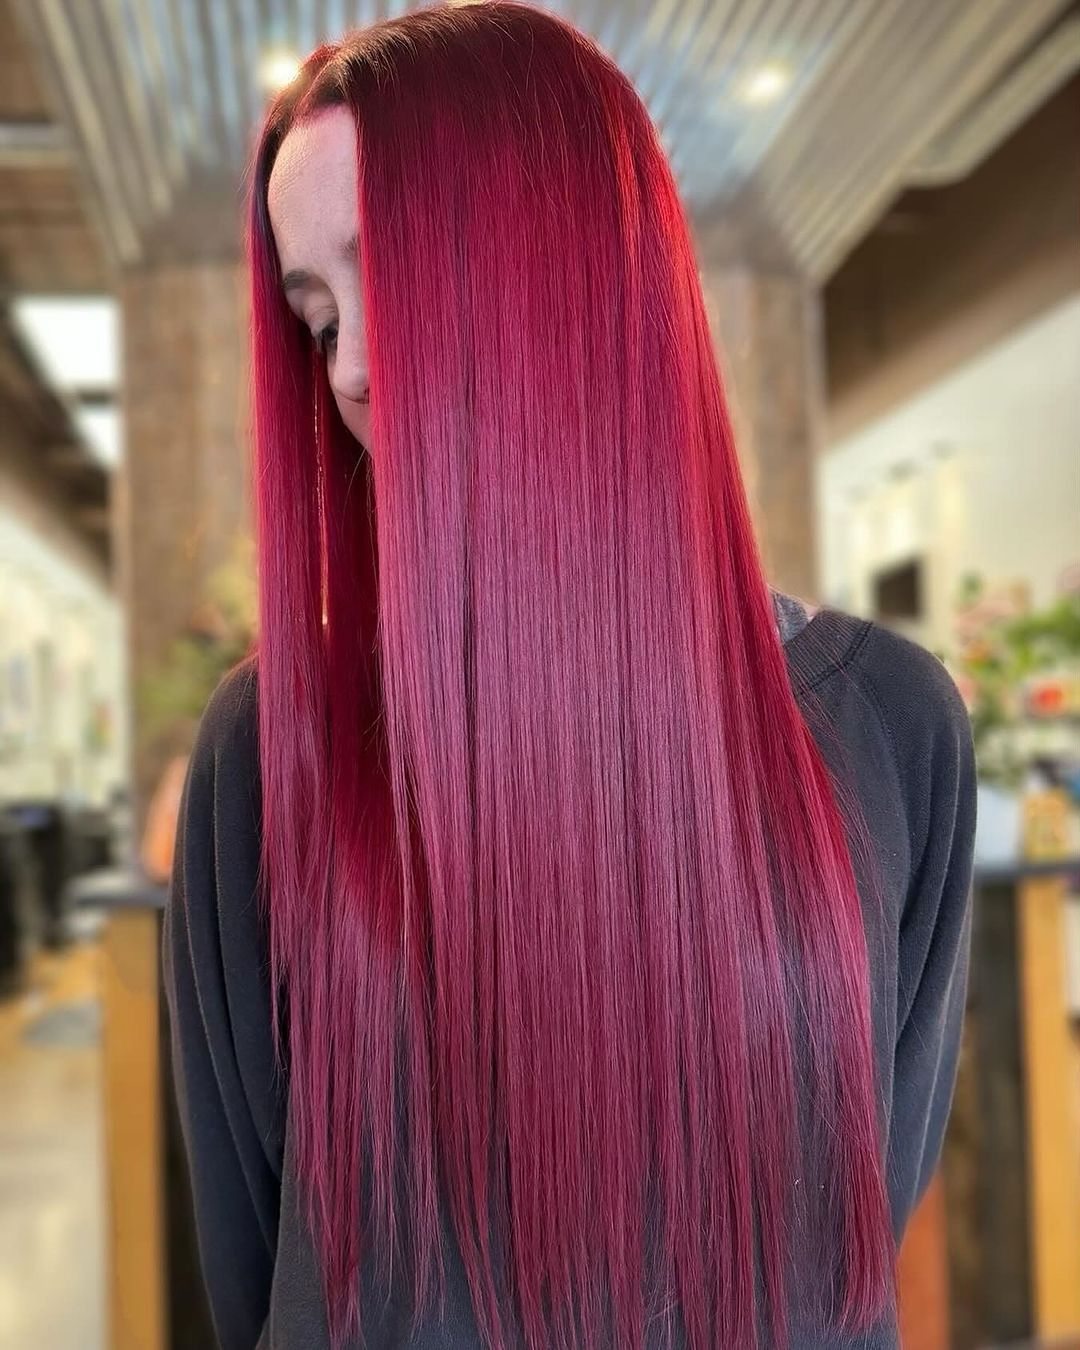 pelo rojo liso